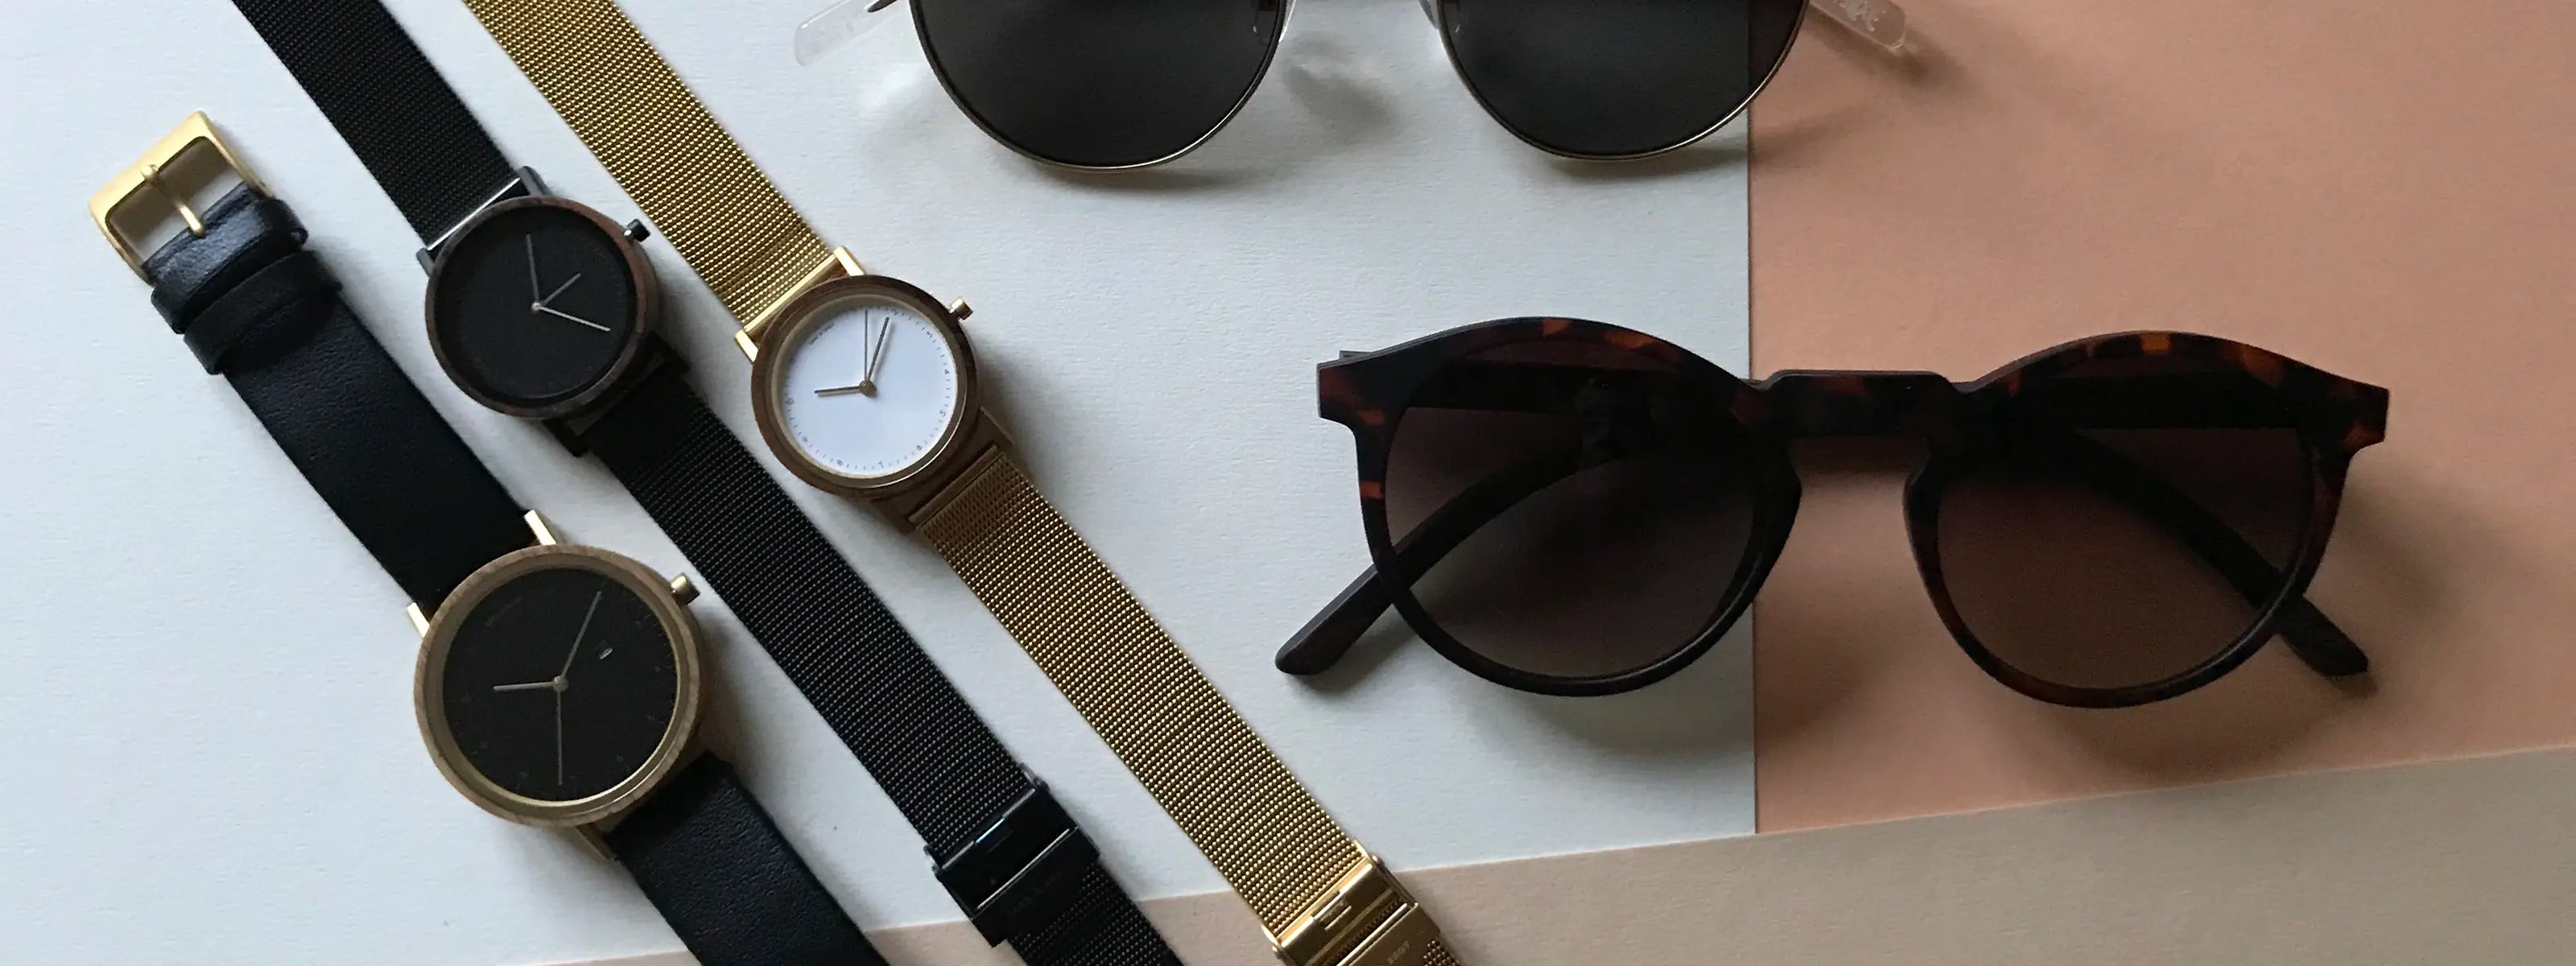 Nachhaltige Sonnenbrillen und Uhren von Take A Shot liegen auf einem hellen Schreibtisch